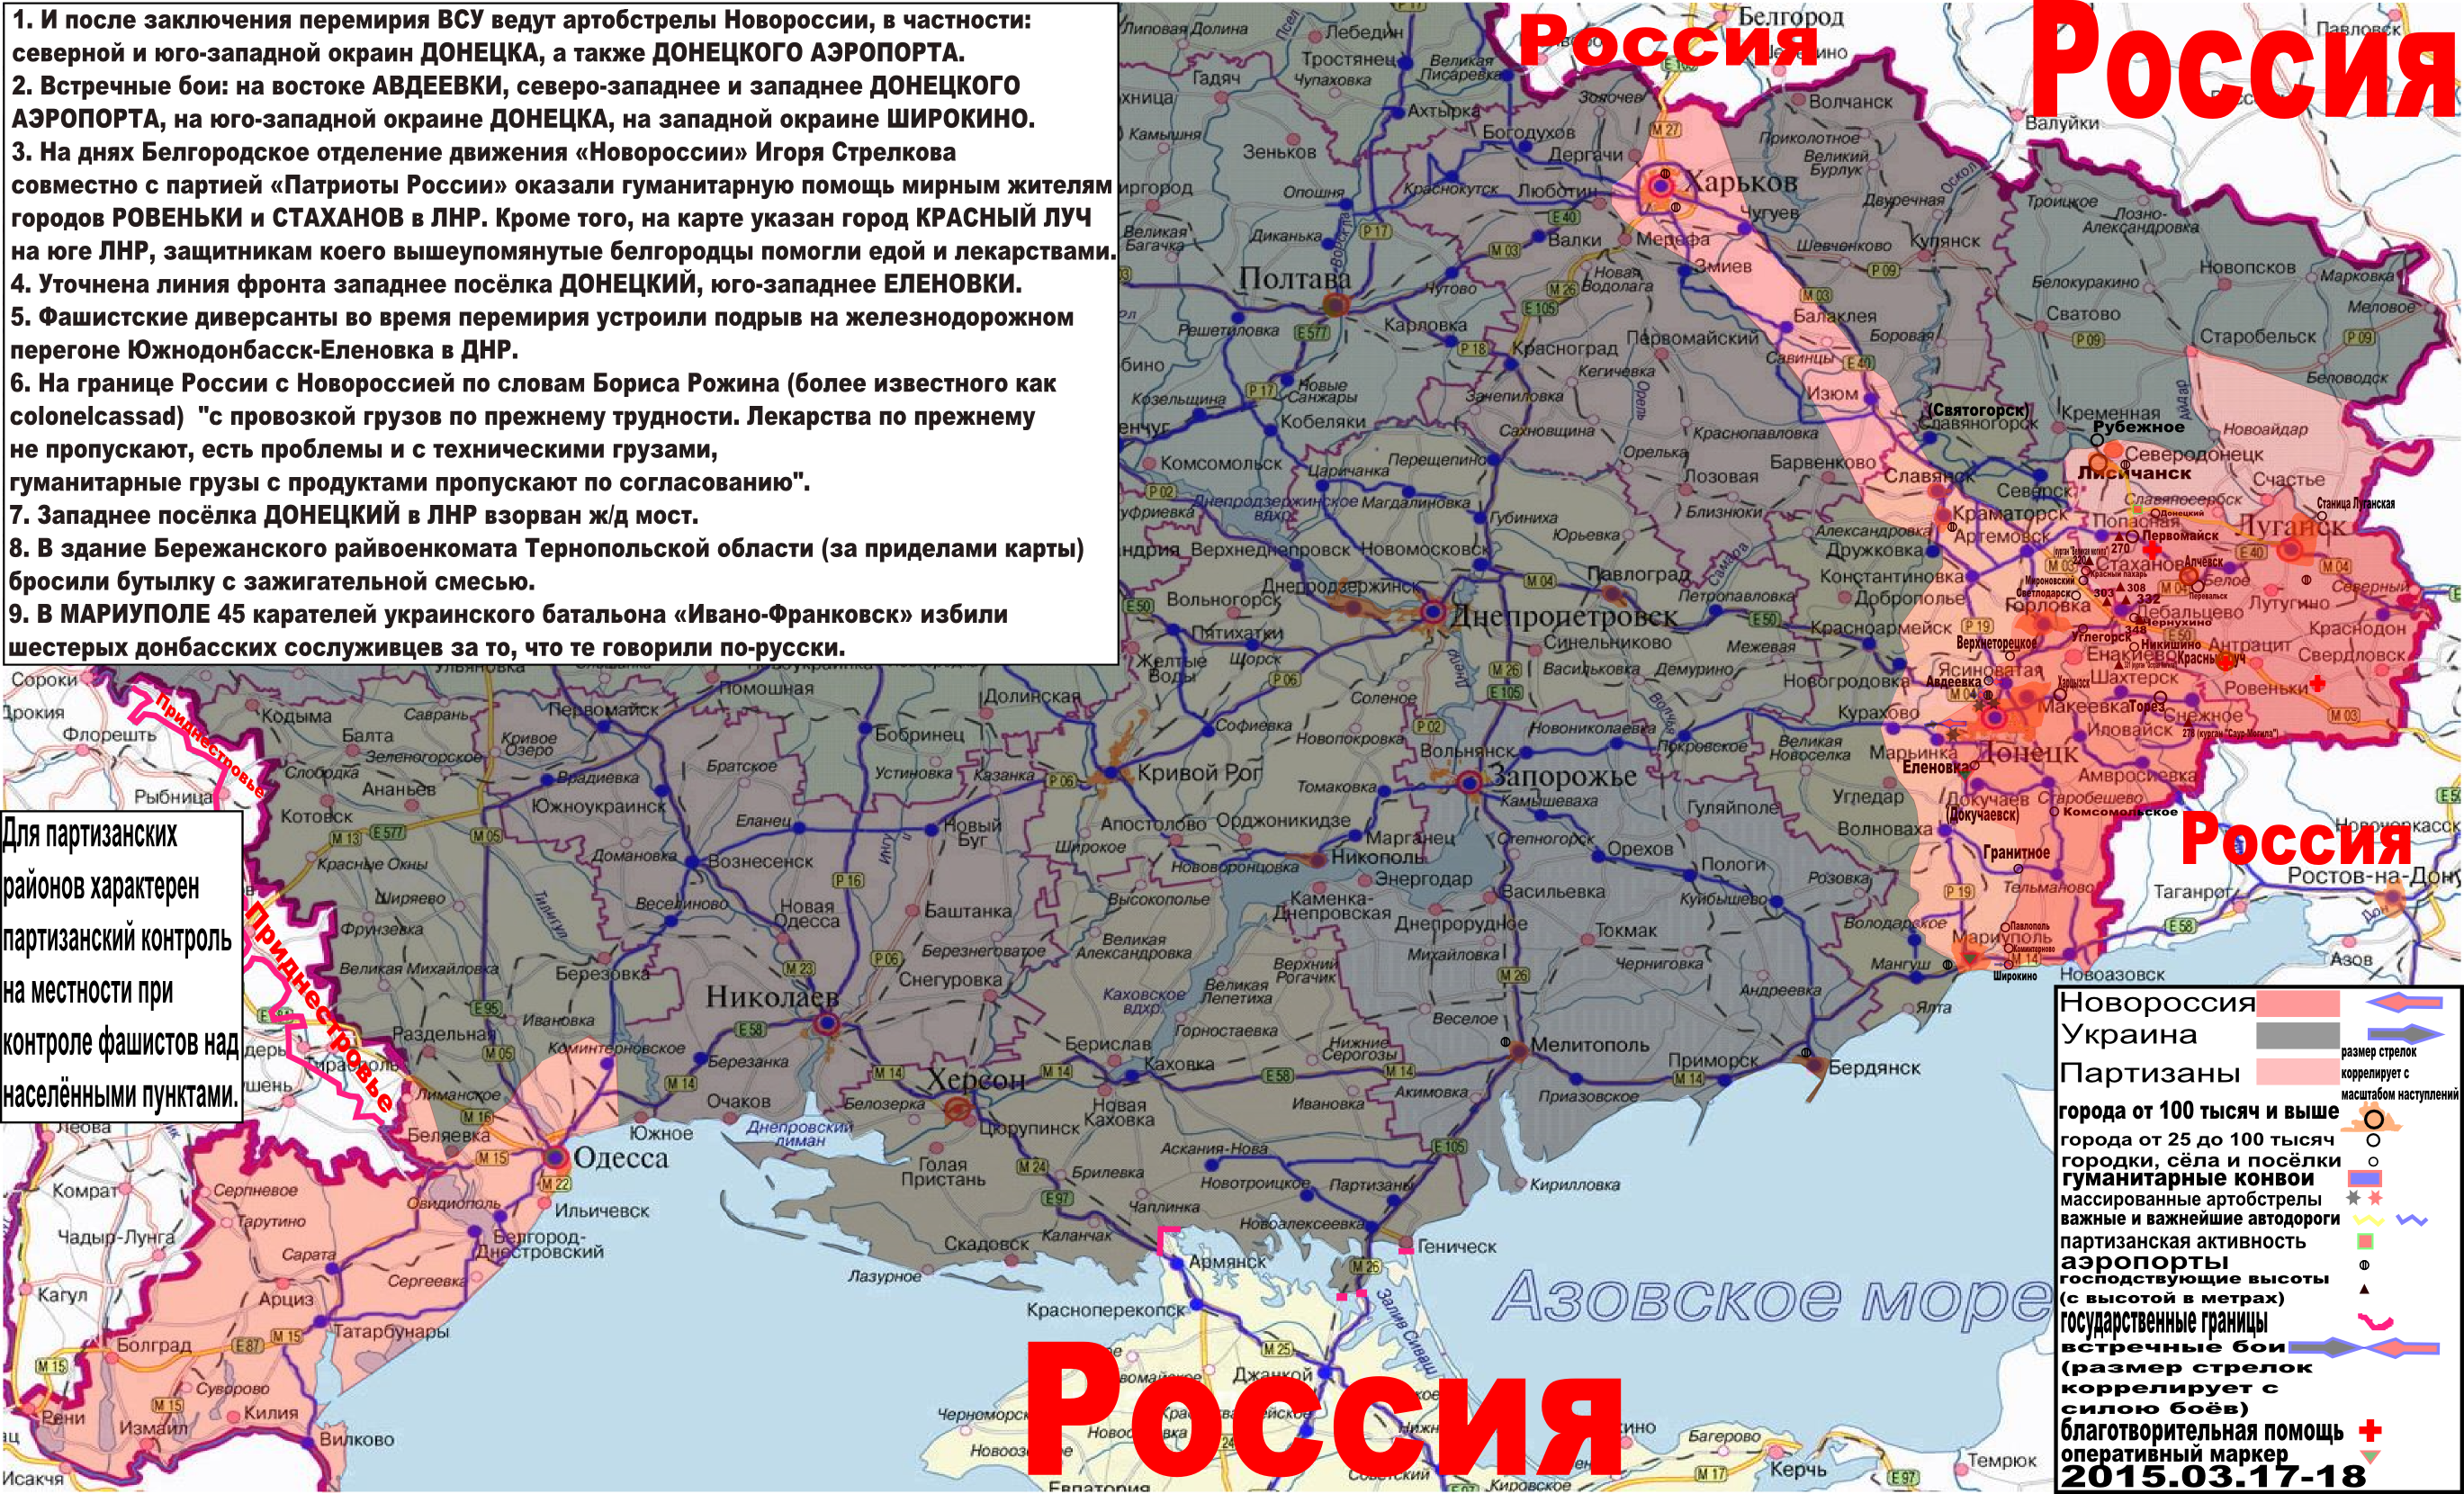 Карта боевых действий и гуманитарных вестей Новороссии с партизанскими районами за 17 - 18 марта 2015